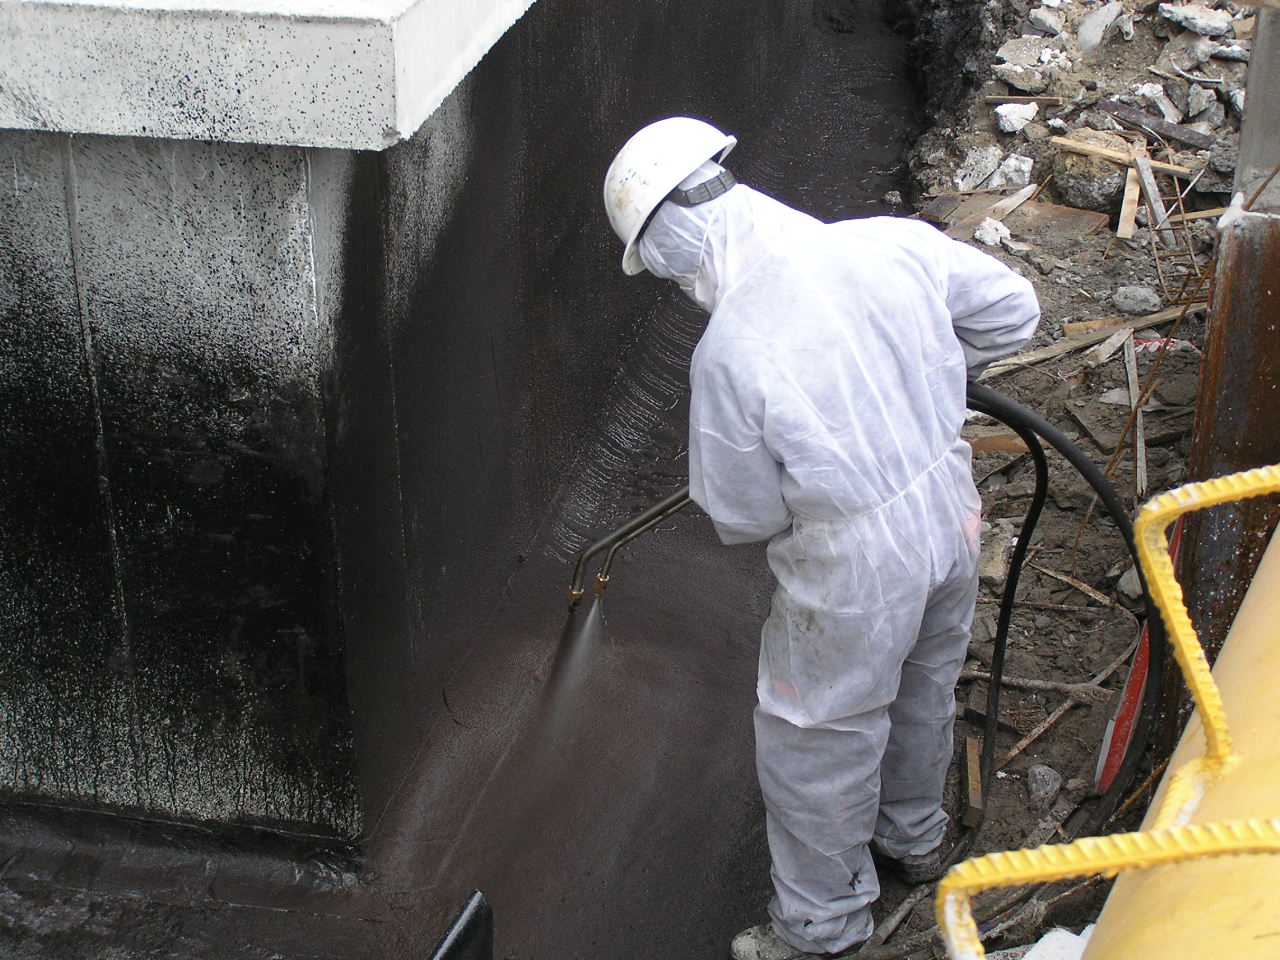 Жидкая гидроизоляция для бетона: жидкой резиной и жидким стеклом